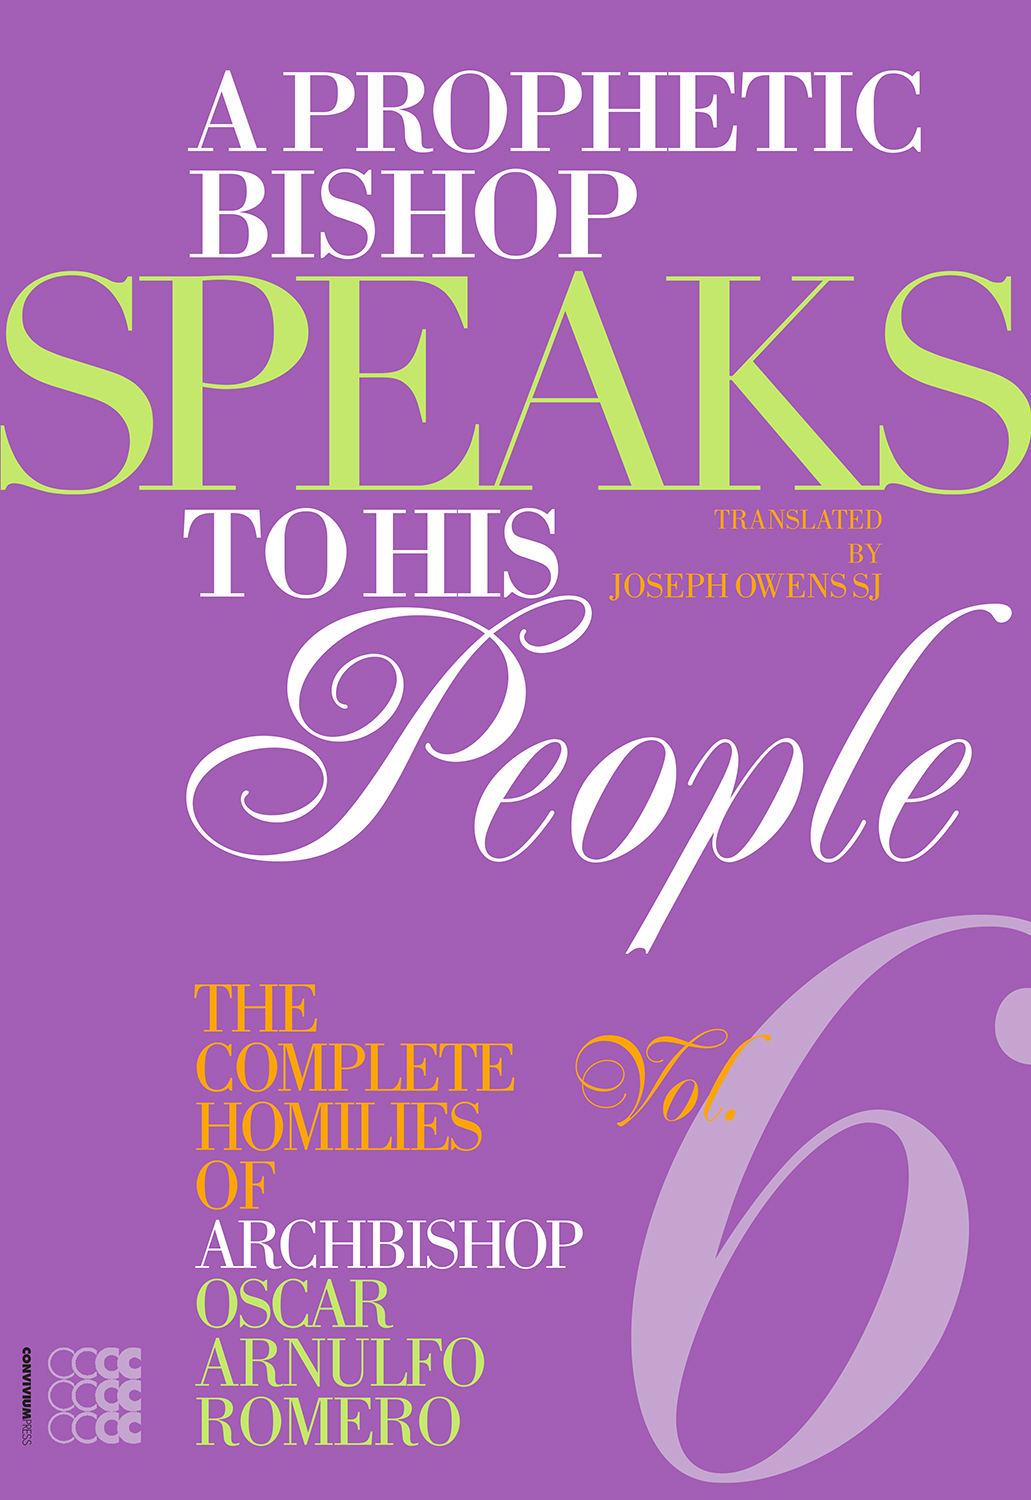 A Prophetic Bishop Speaks to his People 6